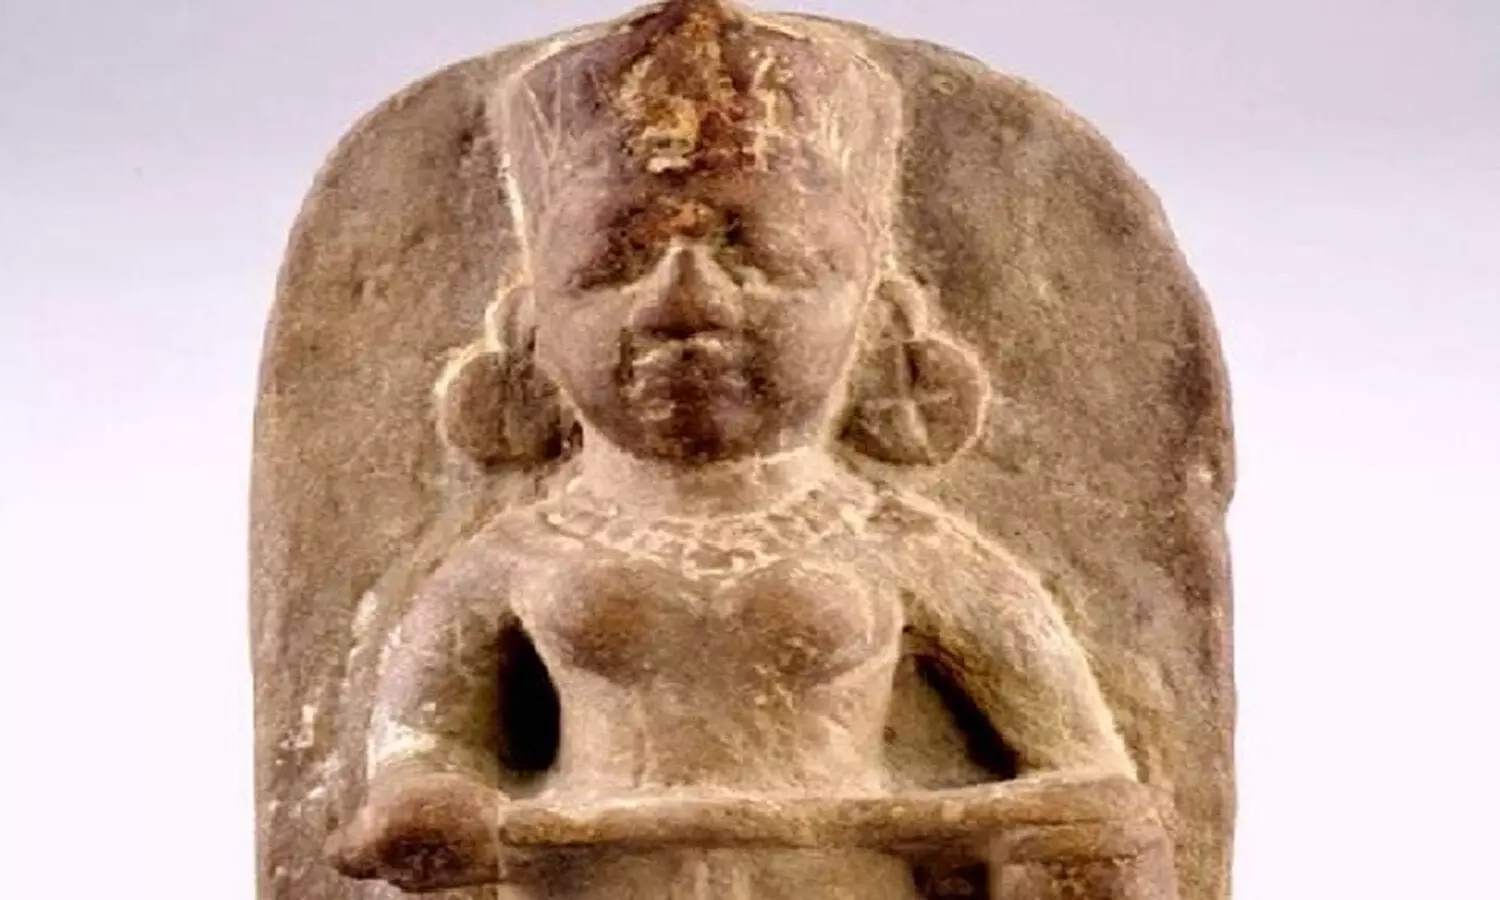 The idol of Maa Annapurna will be installed at Varanasi